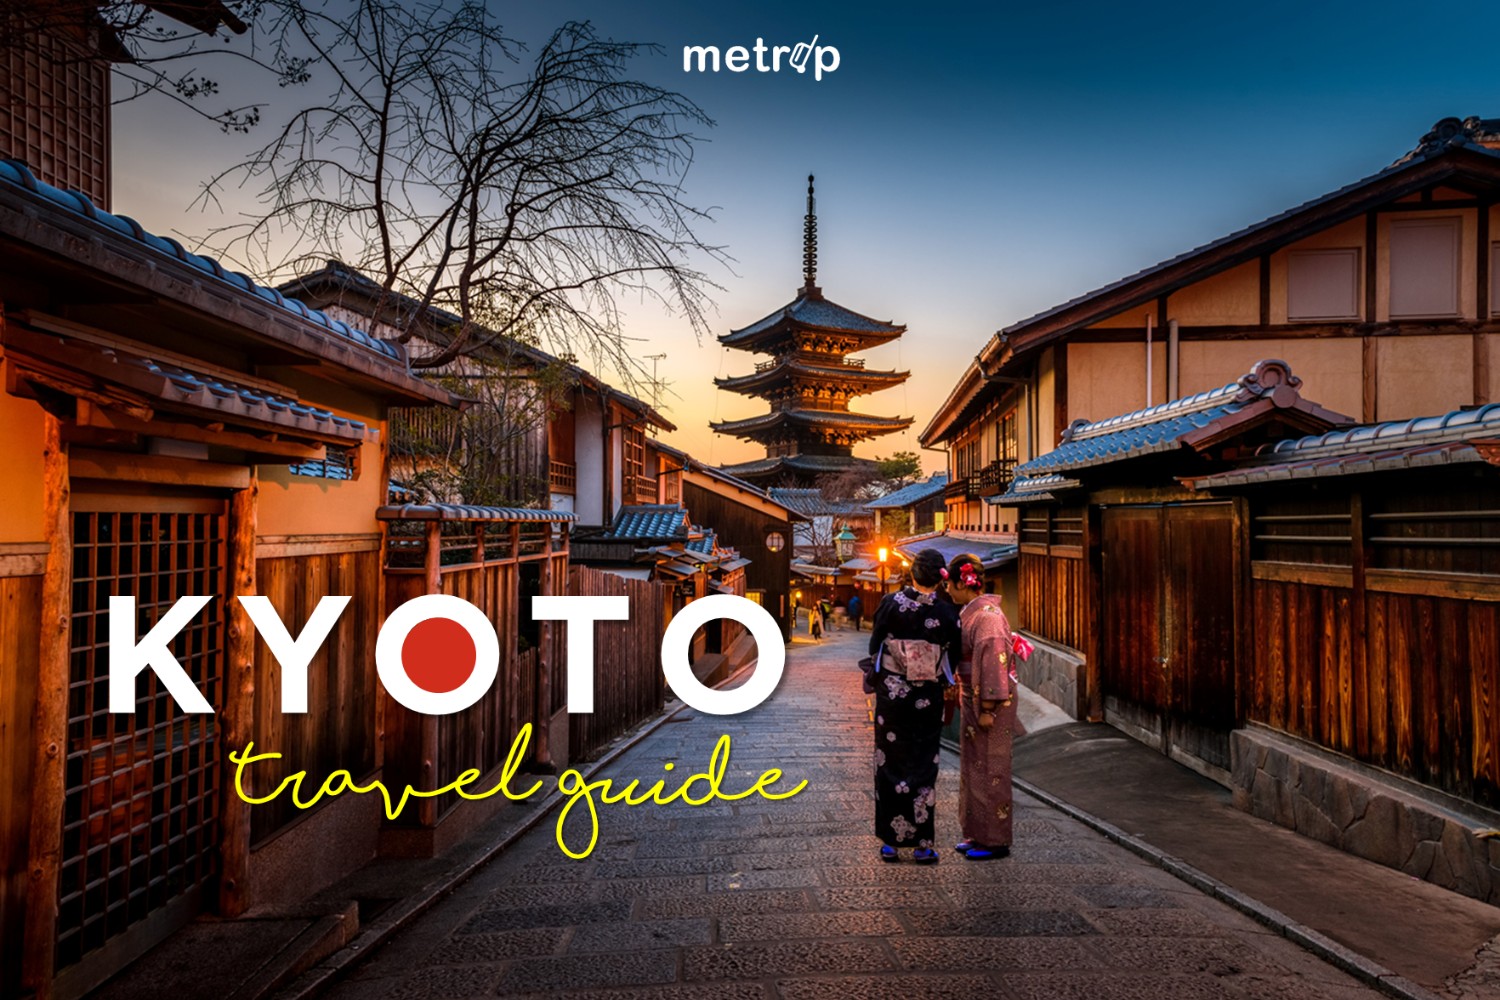 📌 10 ที่เที่ยว Kyoto - เดินเล่นเมืองหลวงเก่า เช่ากิโมโน  ชมธรรมชาติตามฤดูกาล | Metrip - Pantip